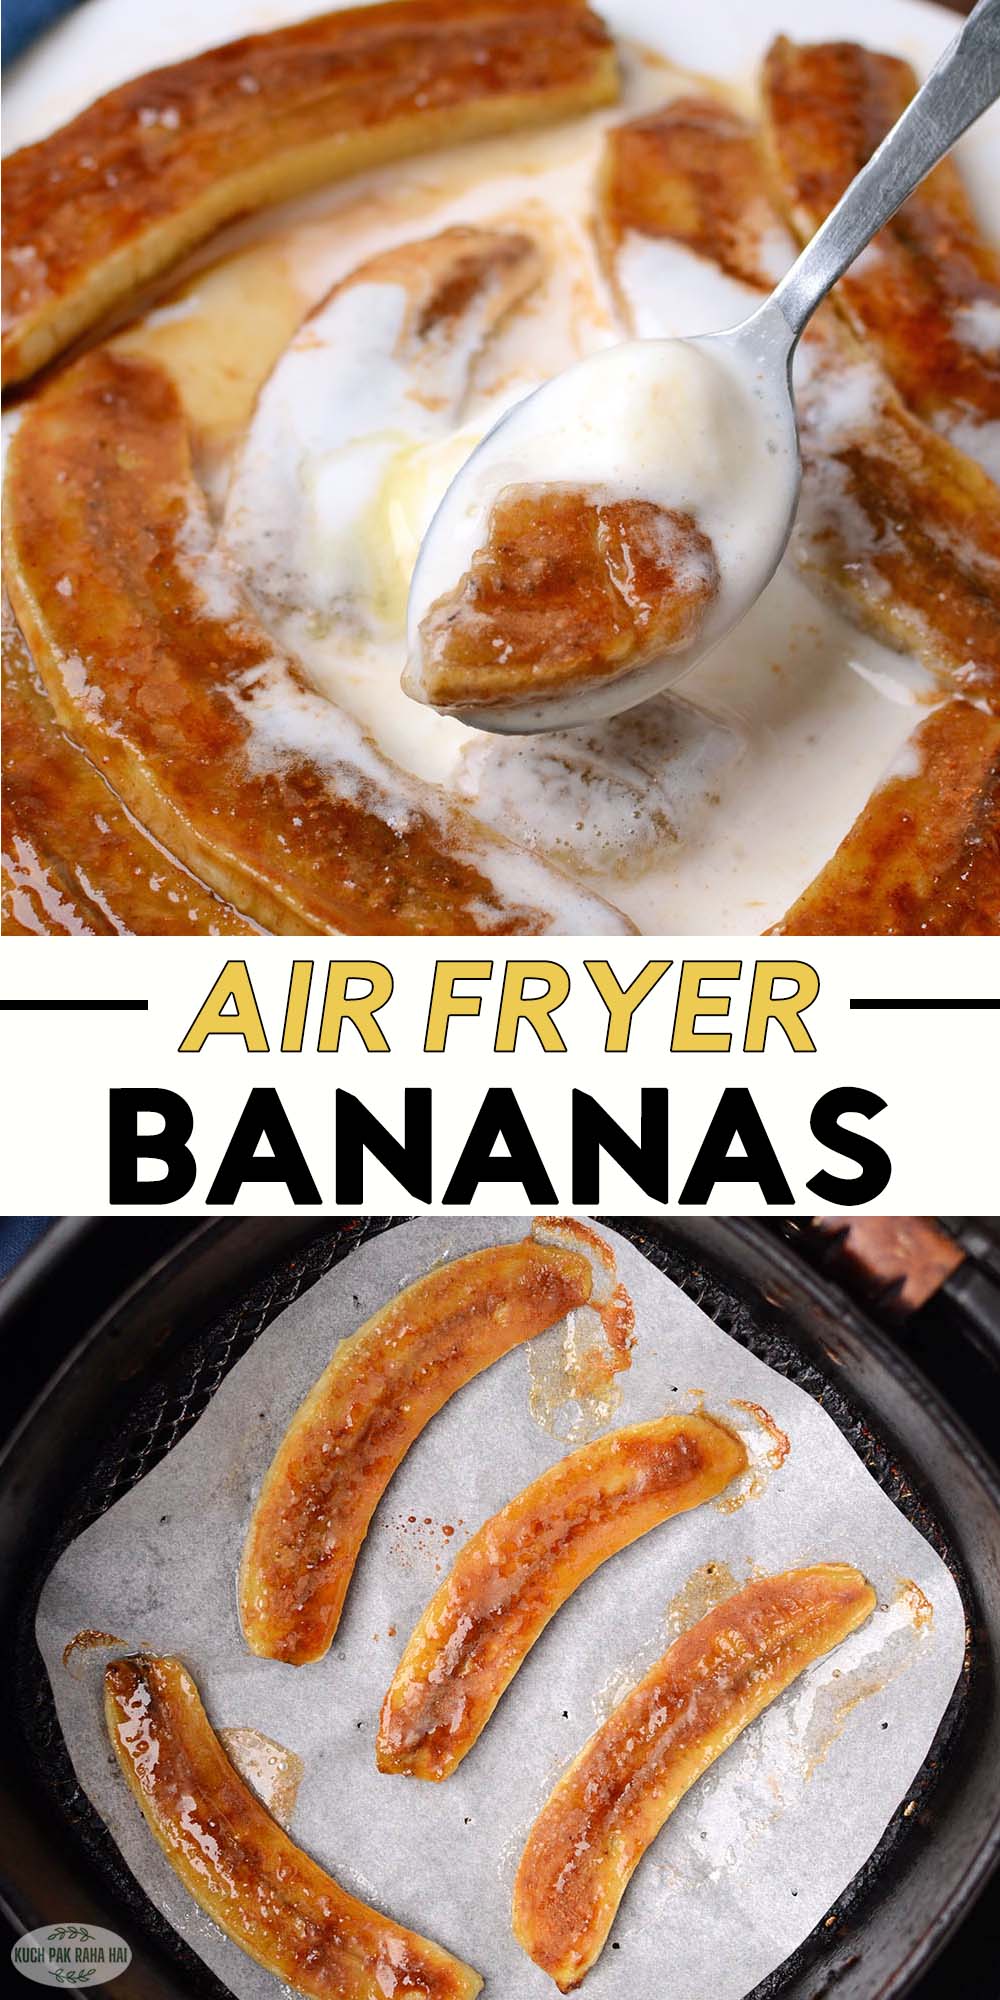 Air fryer banana dessert.